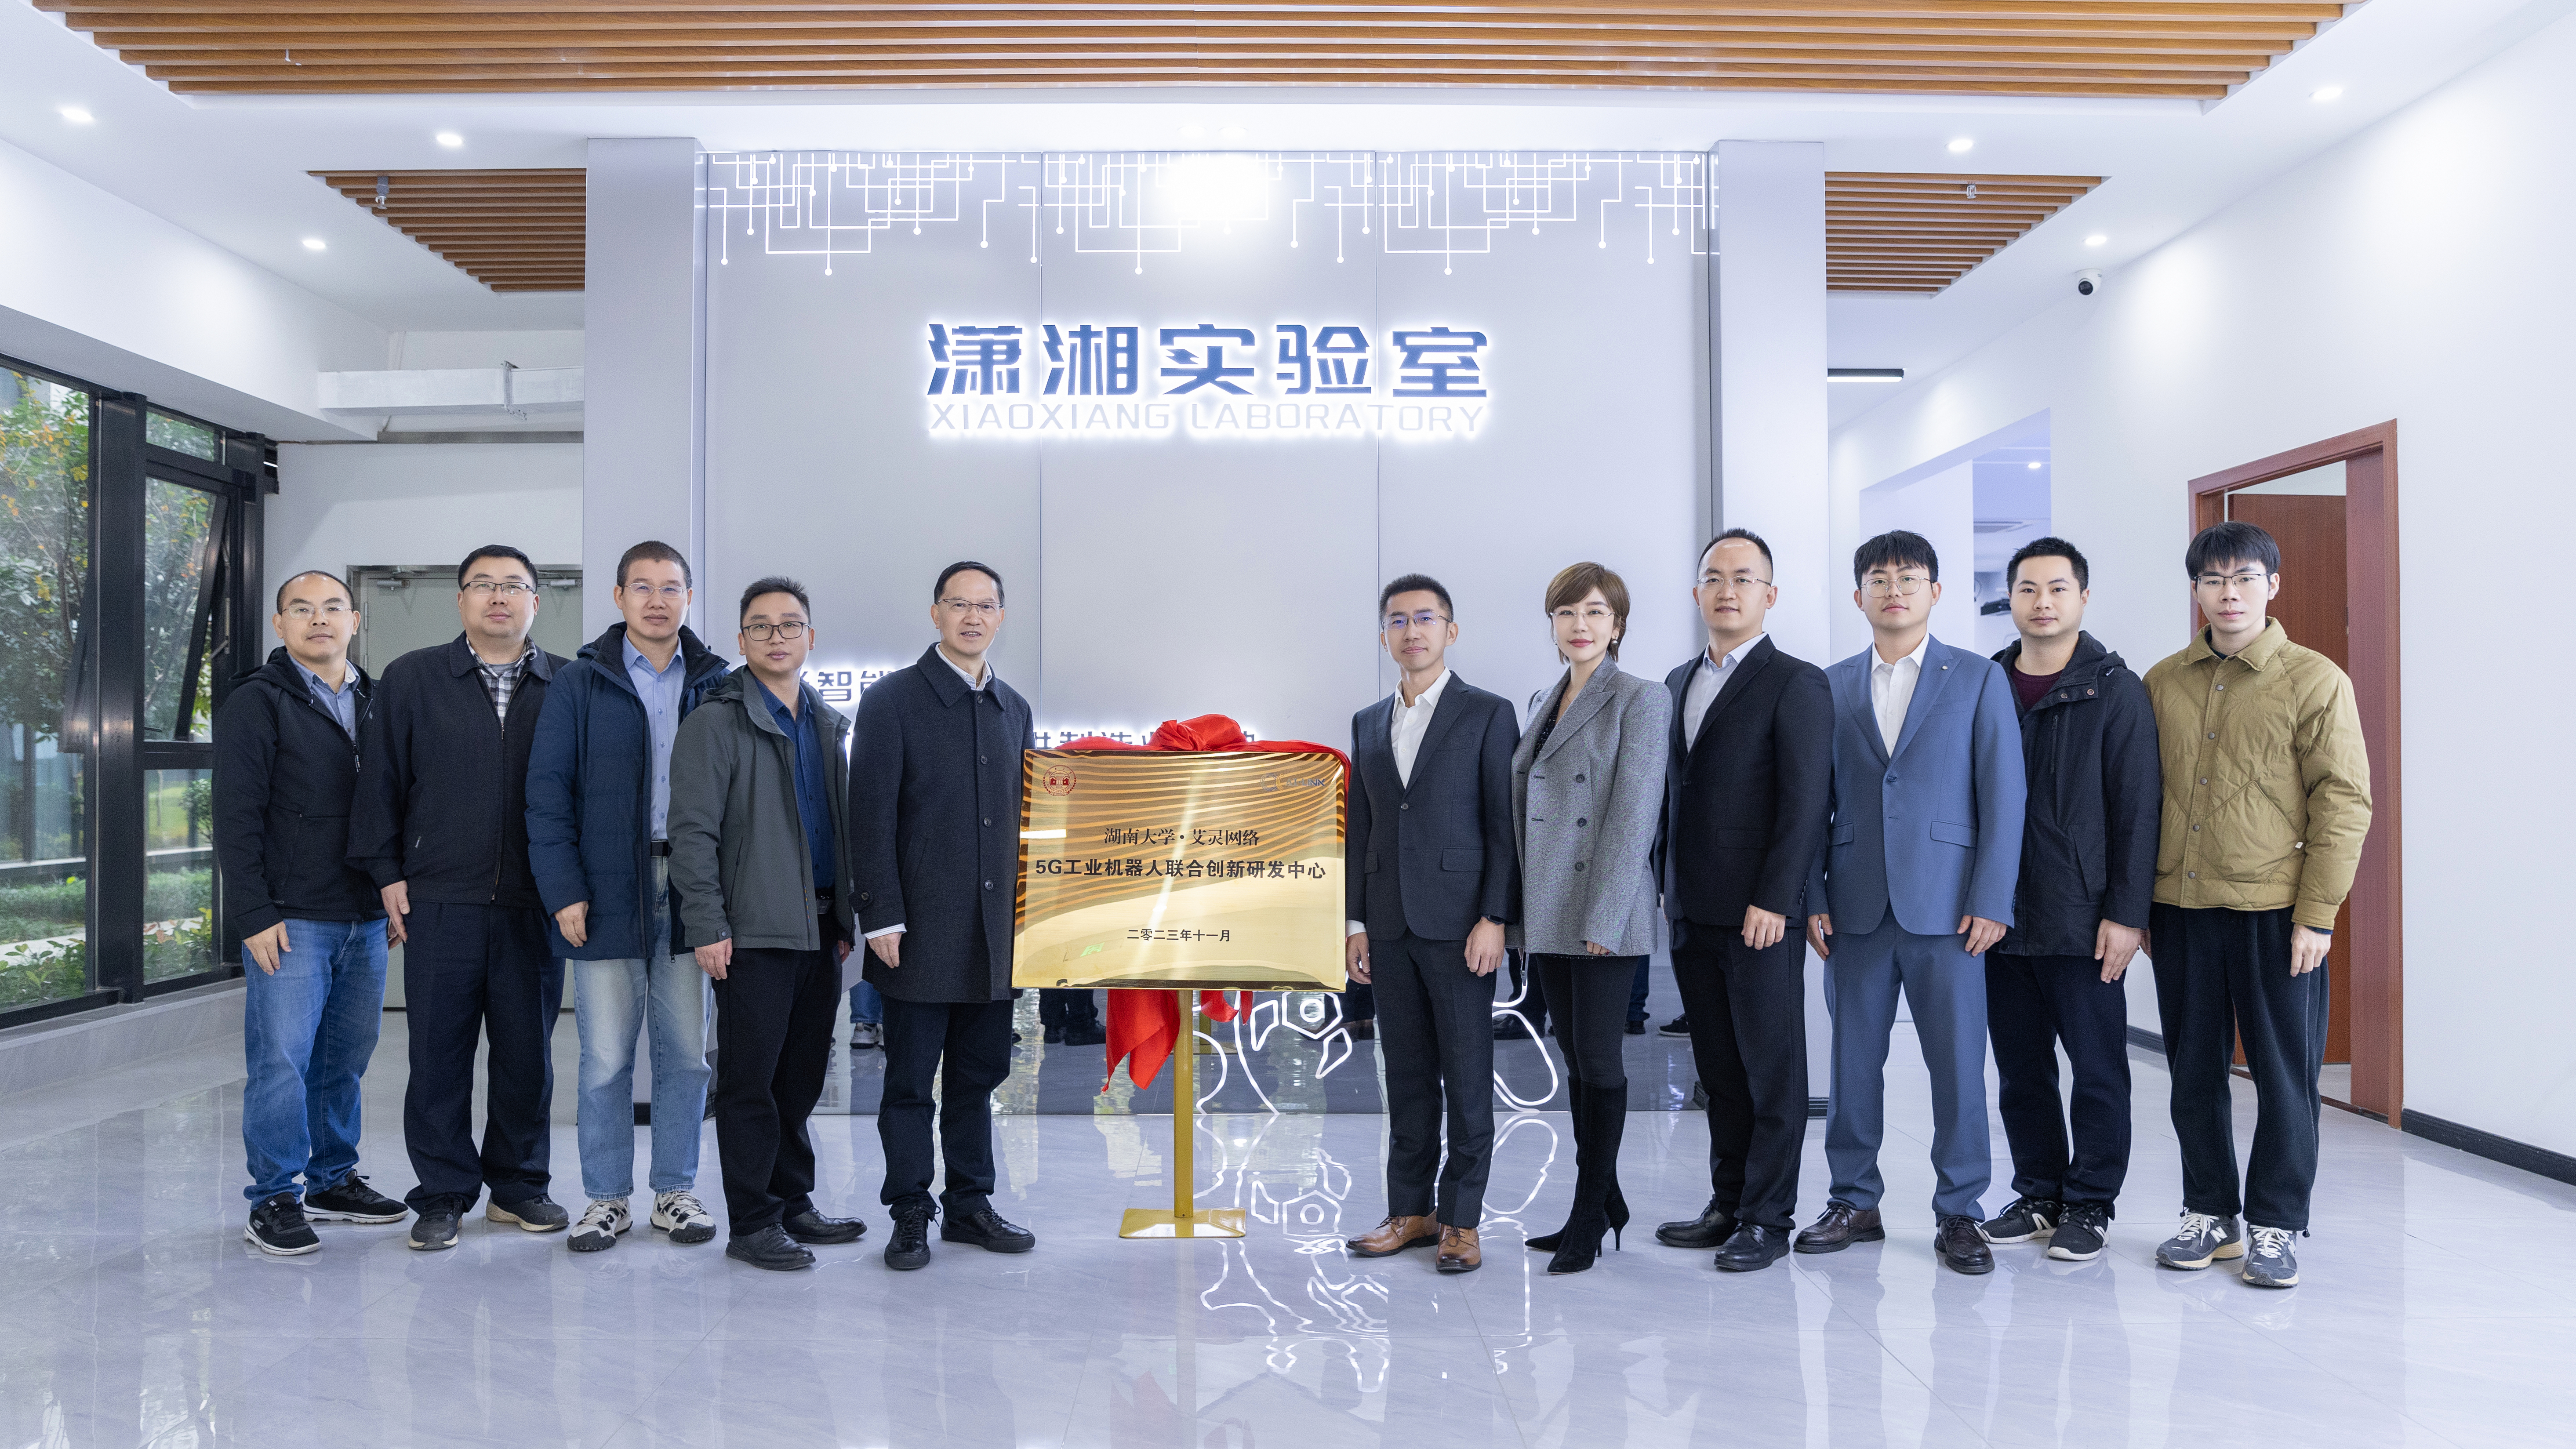 艾灵携手王耀南院士共建“5G 工业机器人联合创新研发中心”